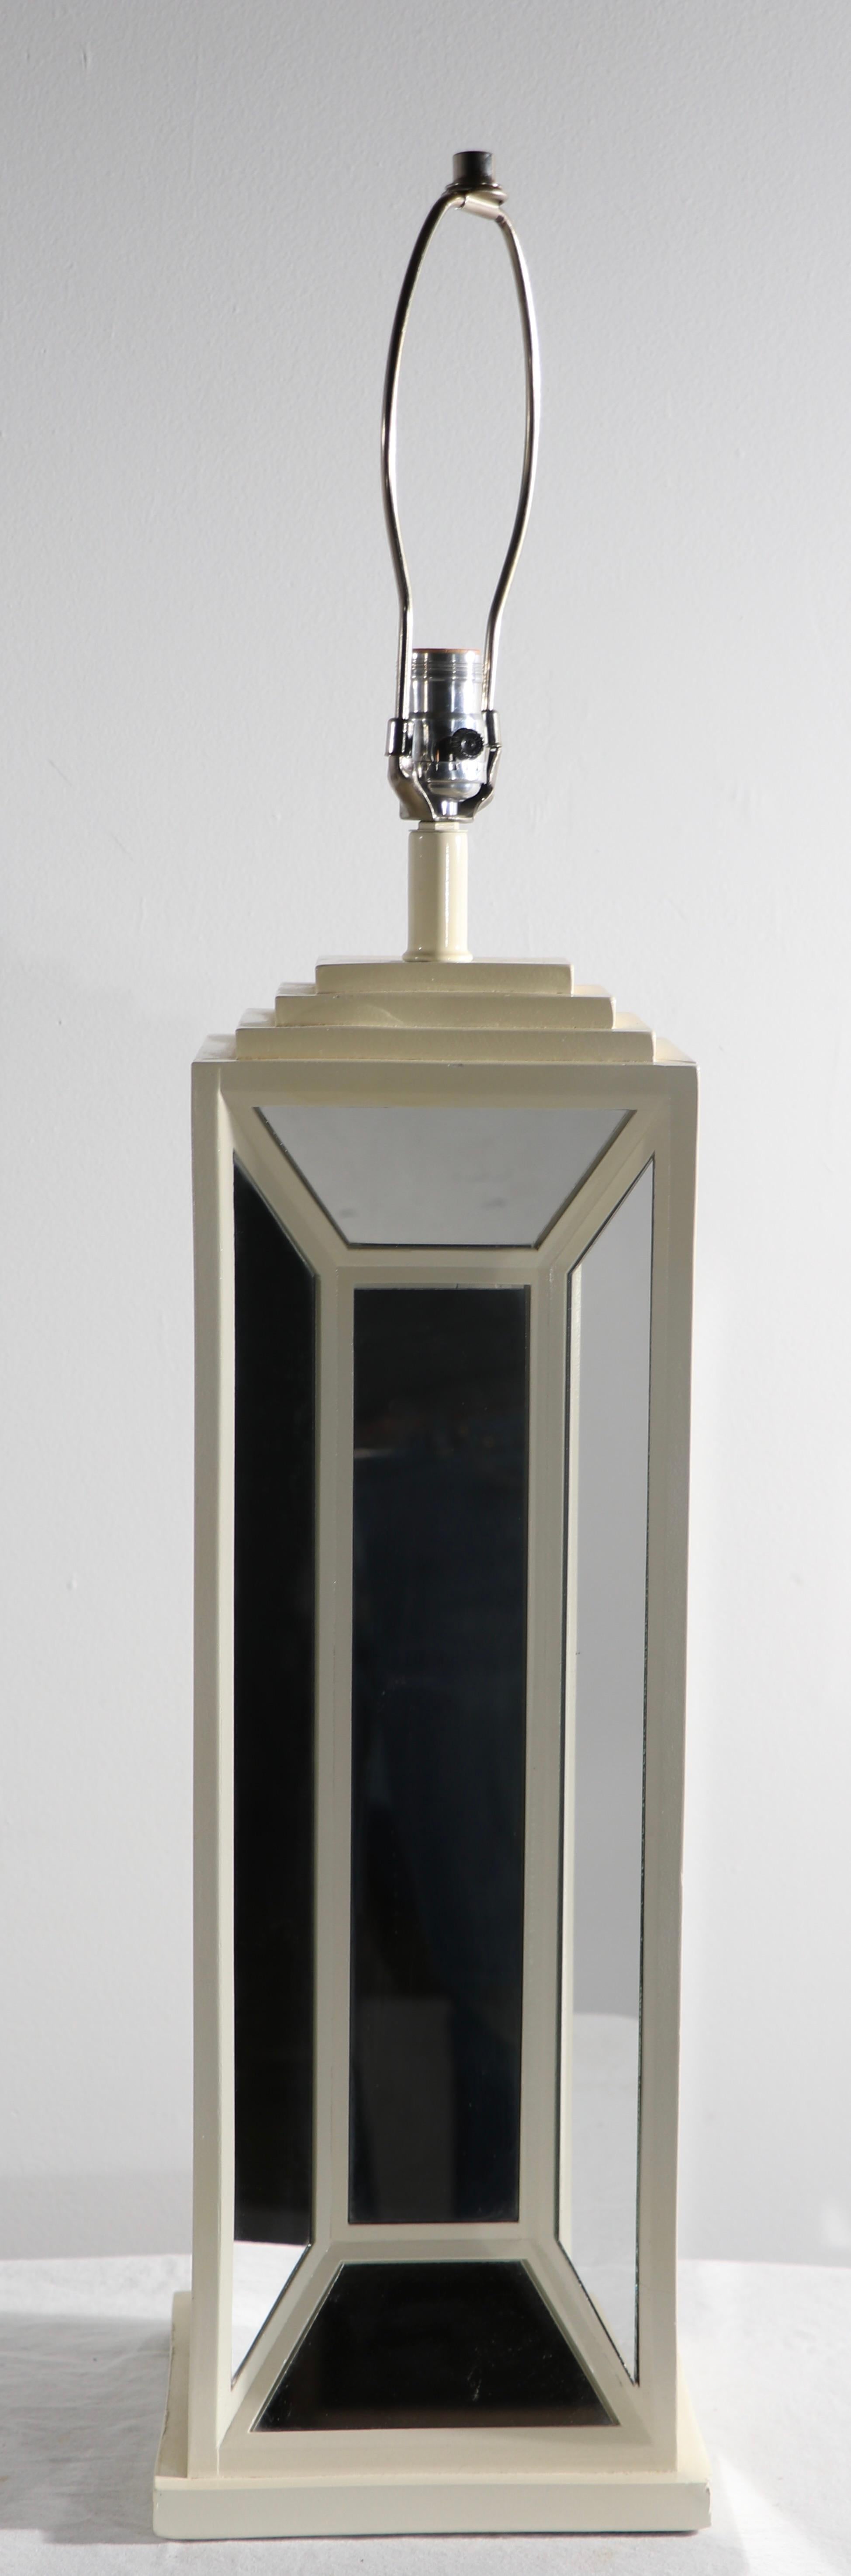 Voguesh, chic paire de lampes de table architecturales à miroir, par Max Blumberg, circa 1970-1980's. Les lampes présentent un corps dimensionnel, avec des panneaux géométriques en verre miroir. Les deux sont en très bon état, original, propre et